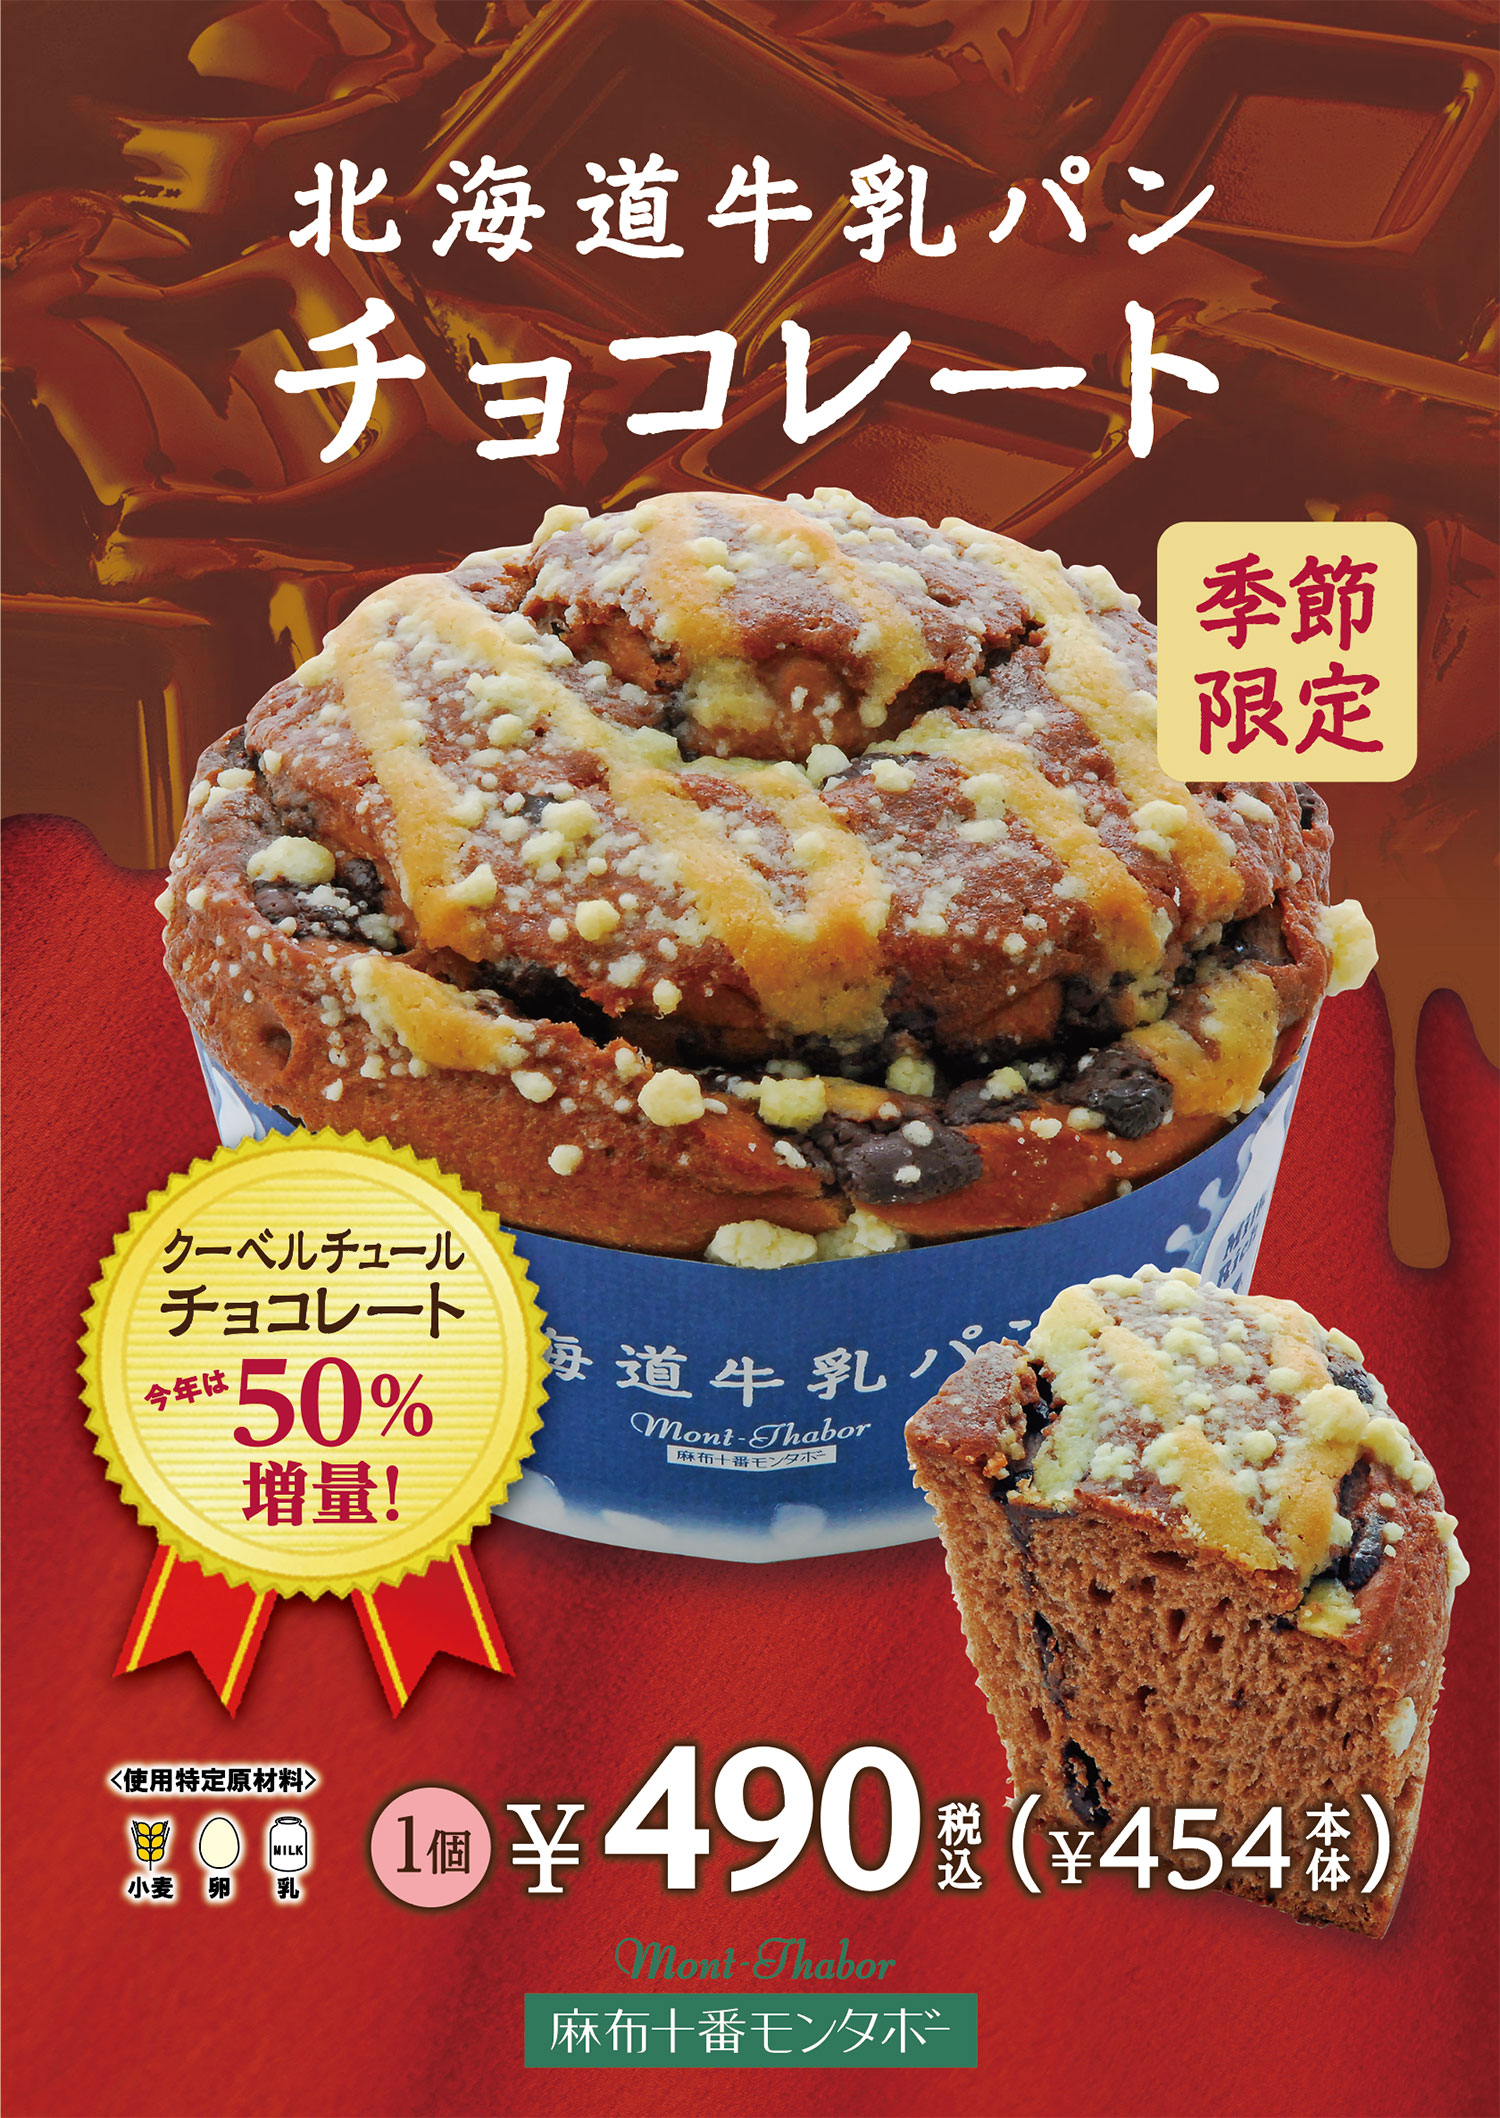 2021年11月11日発売 カカオ58%クーベルチュールチョコレート使用。贅沢な味わいの「北海道牛乳パン チョコレート」